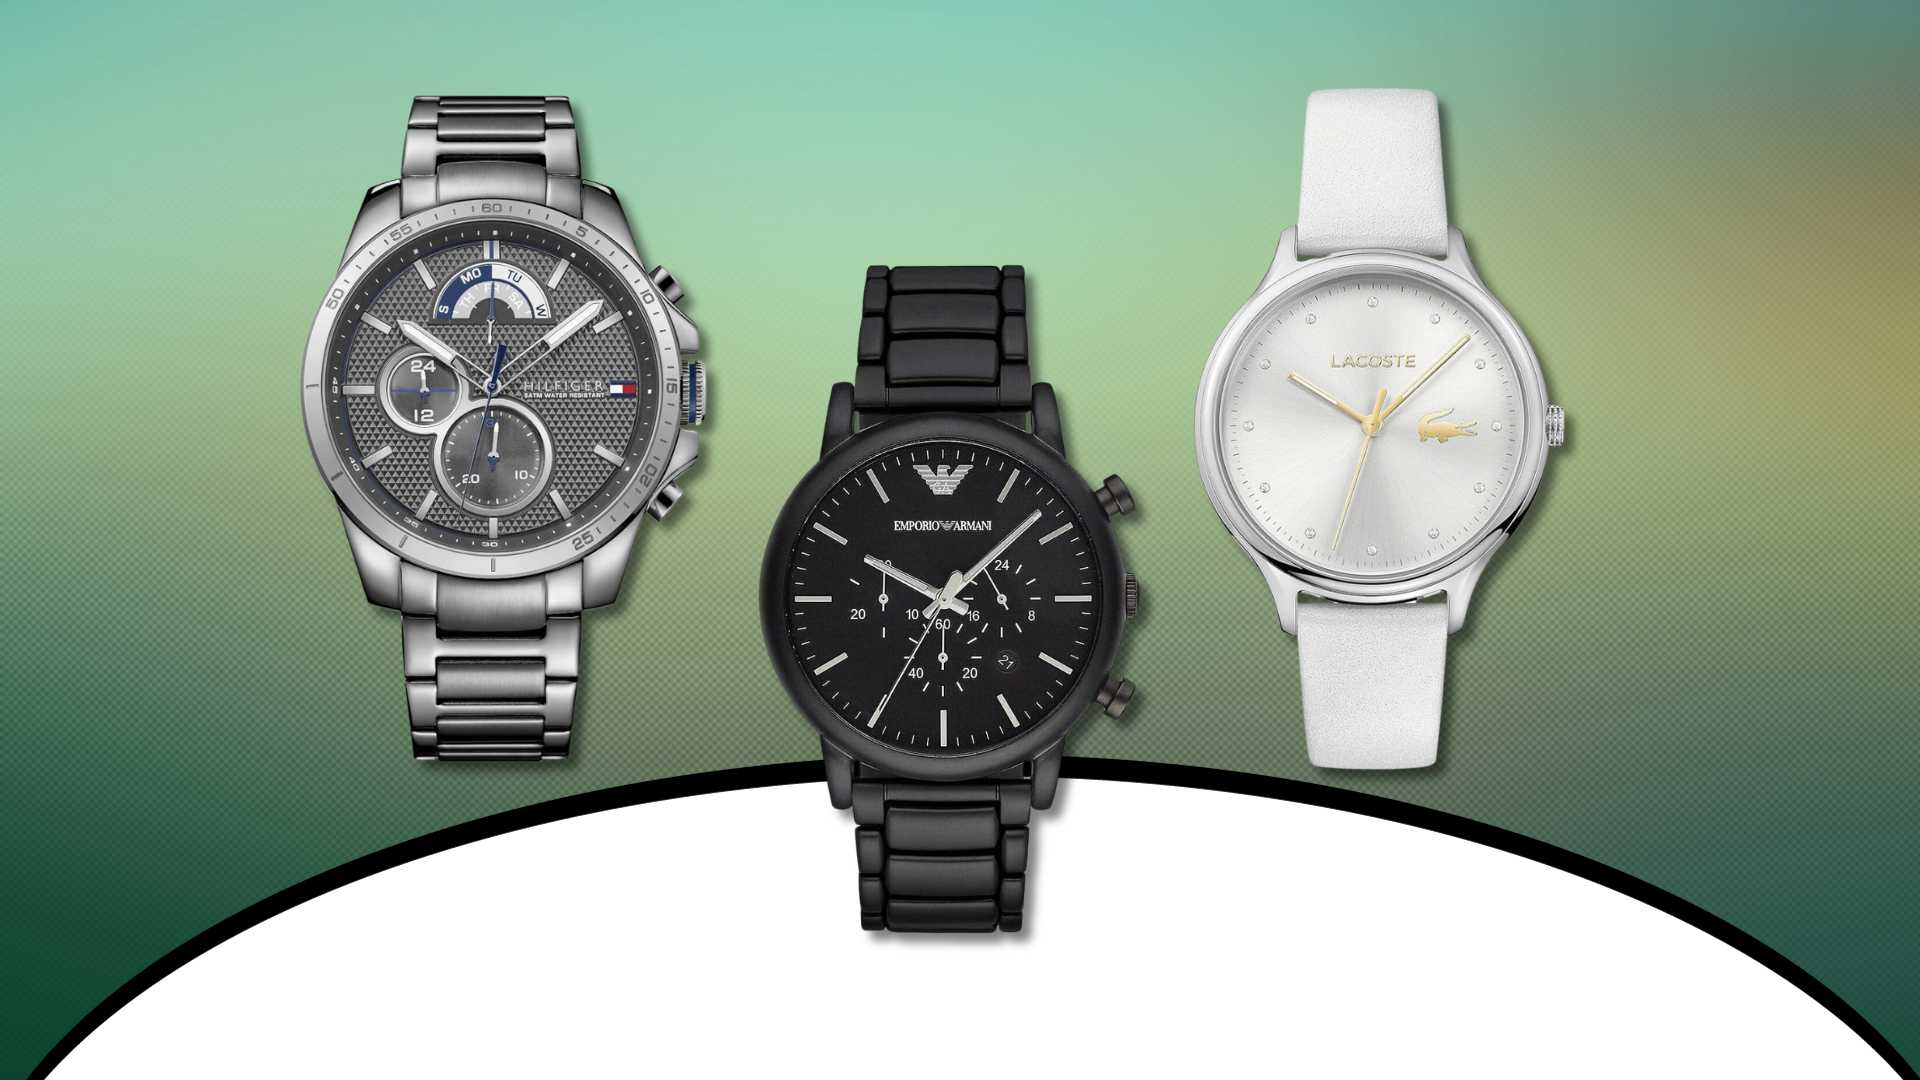 Uhren im Black-Friday-Sale: Modelle für Sie und Ihn mit Rabatt bei Amazon kaufen